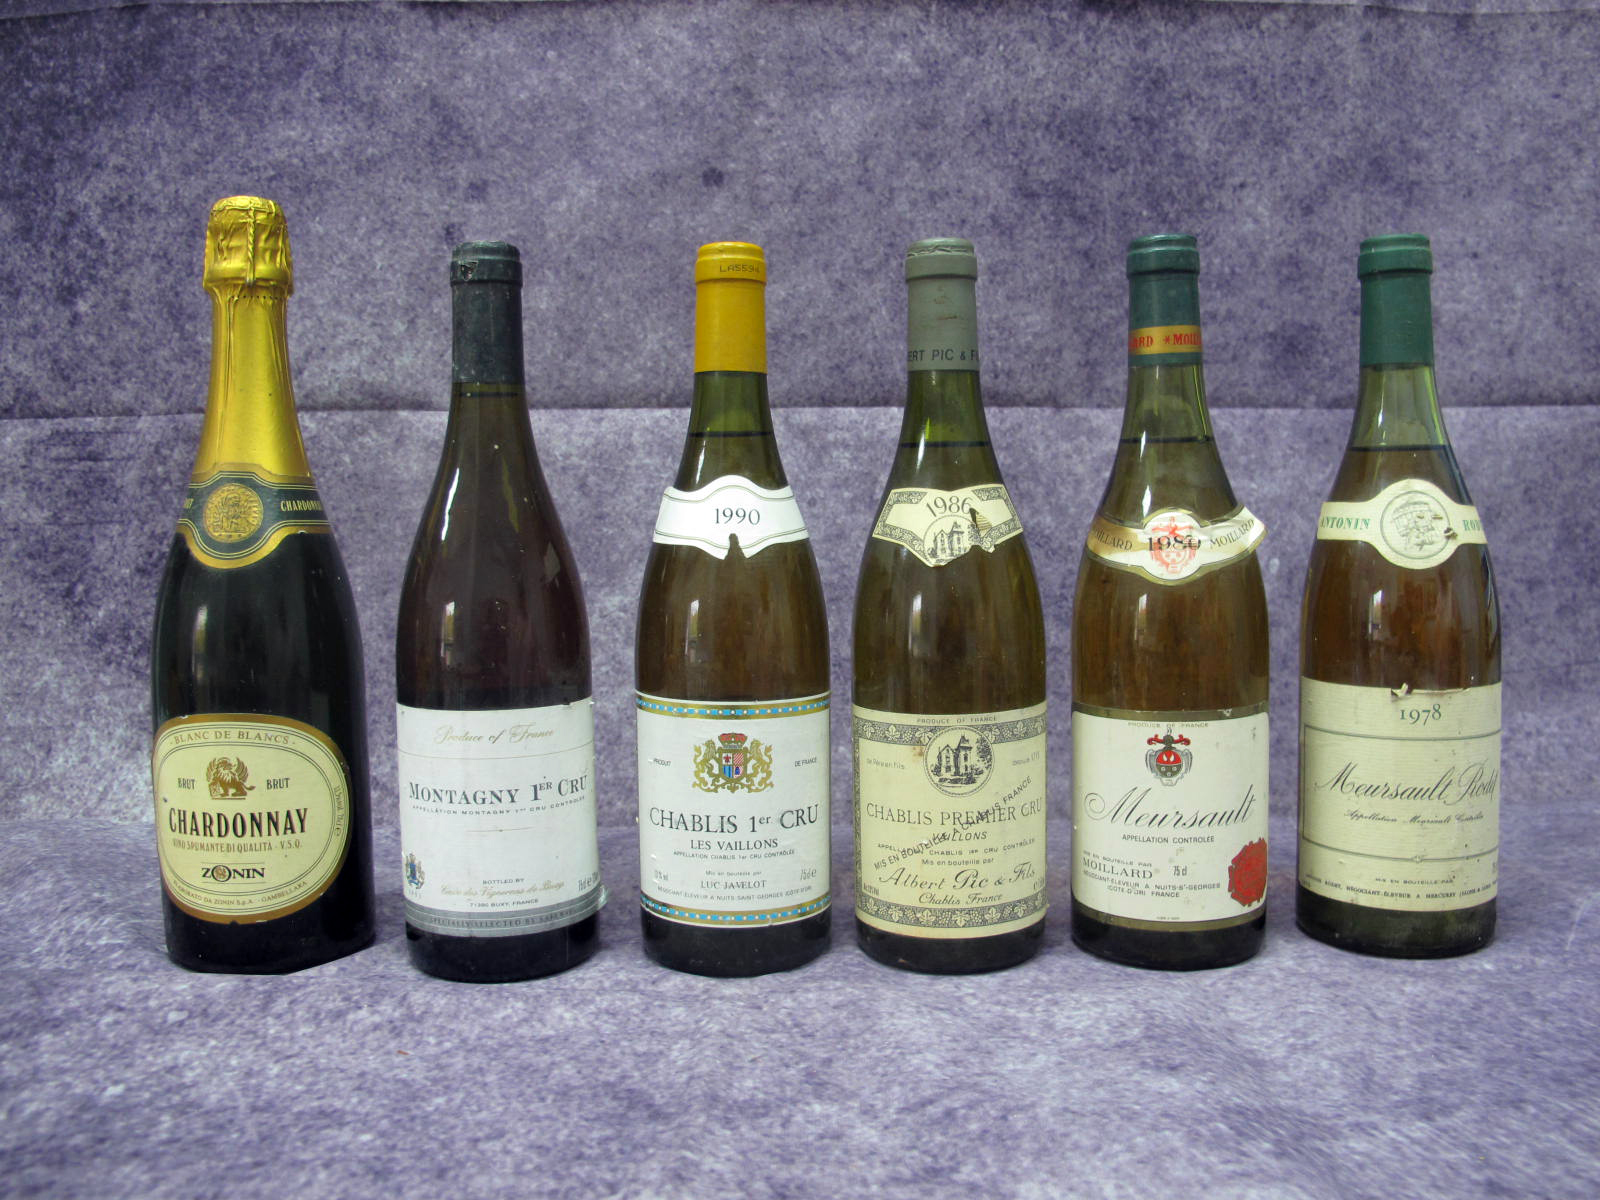 Wines - Montagny 1er Cru 1993, 75cl; Chablis 1er Cru Les Vaillons 1990, 75cl; Chablis Premier Cru